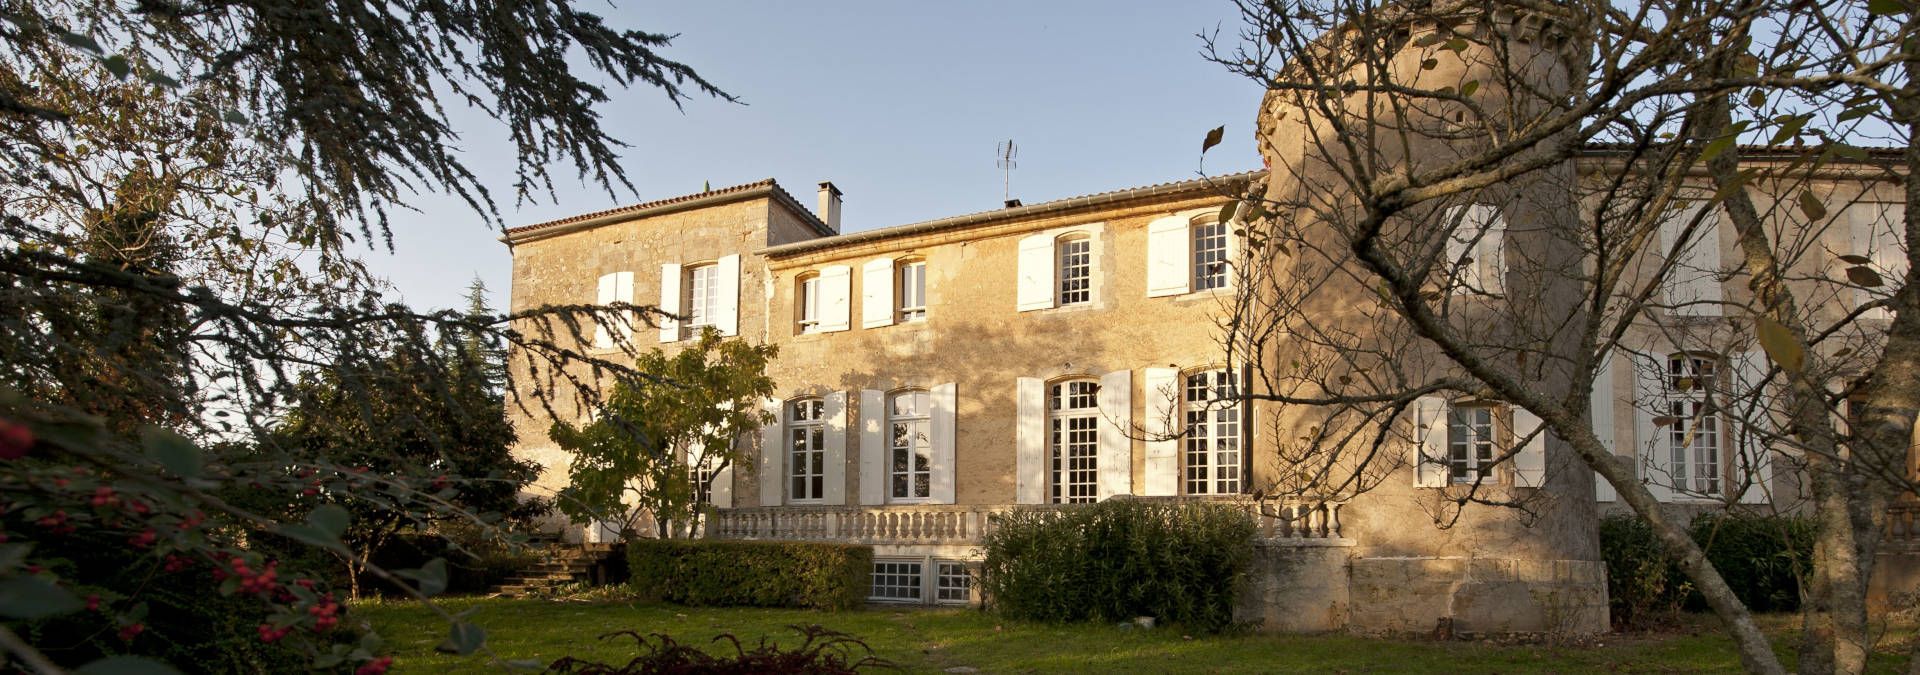 Château Monconseil-Gazin - Rue des Vignerons